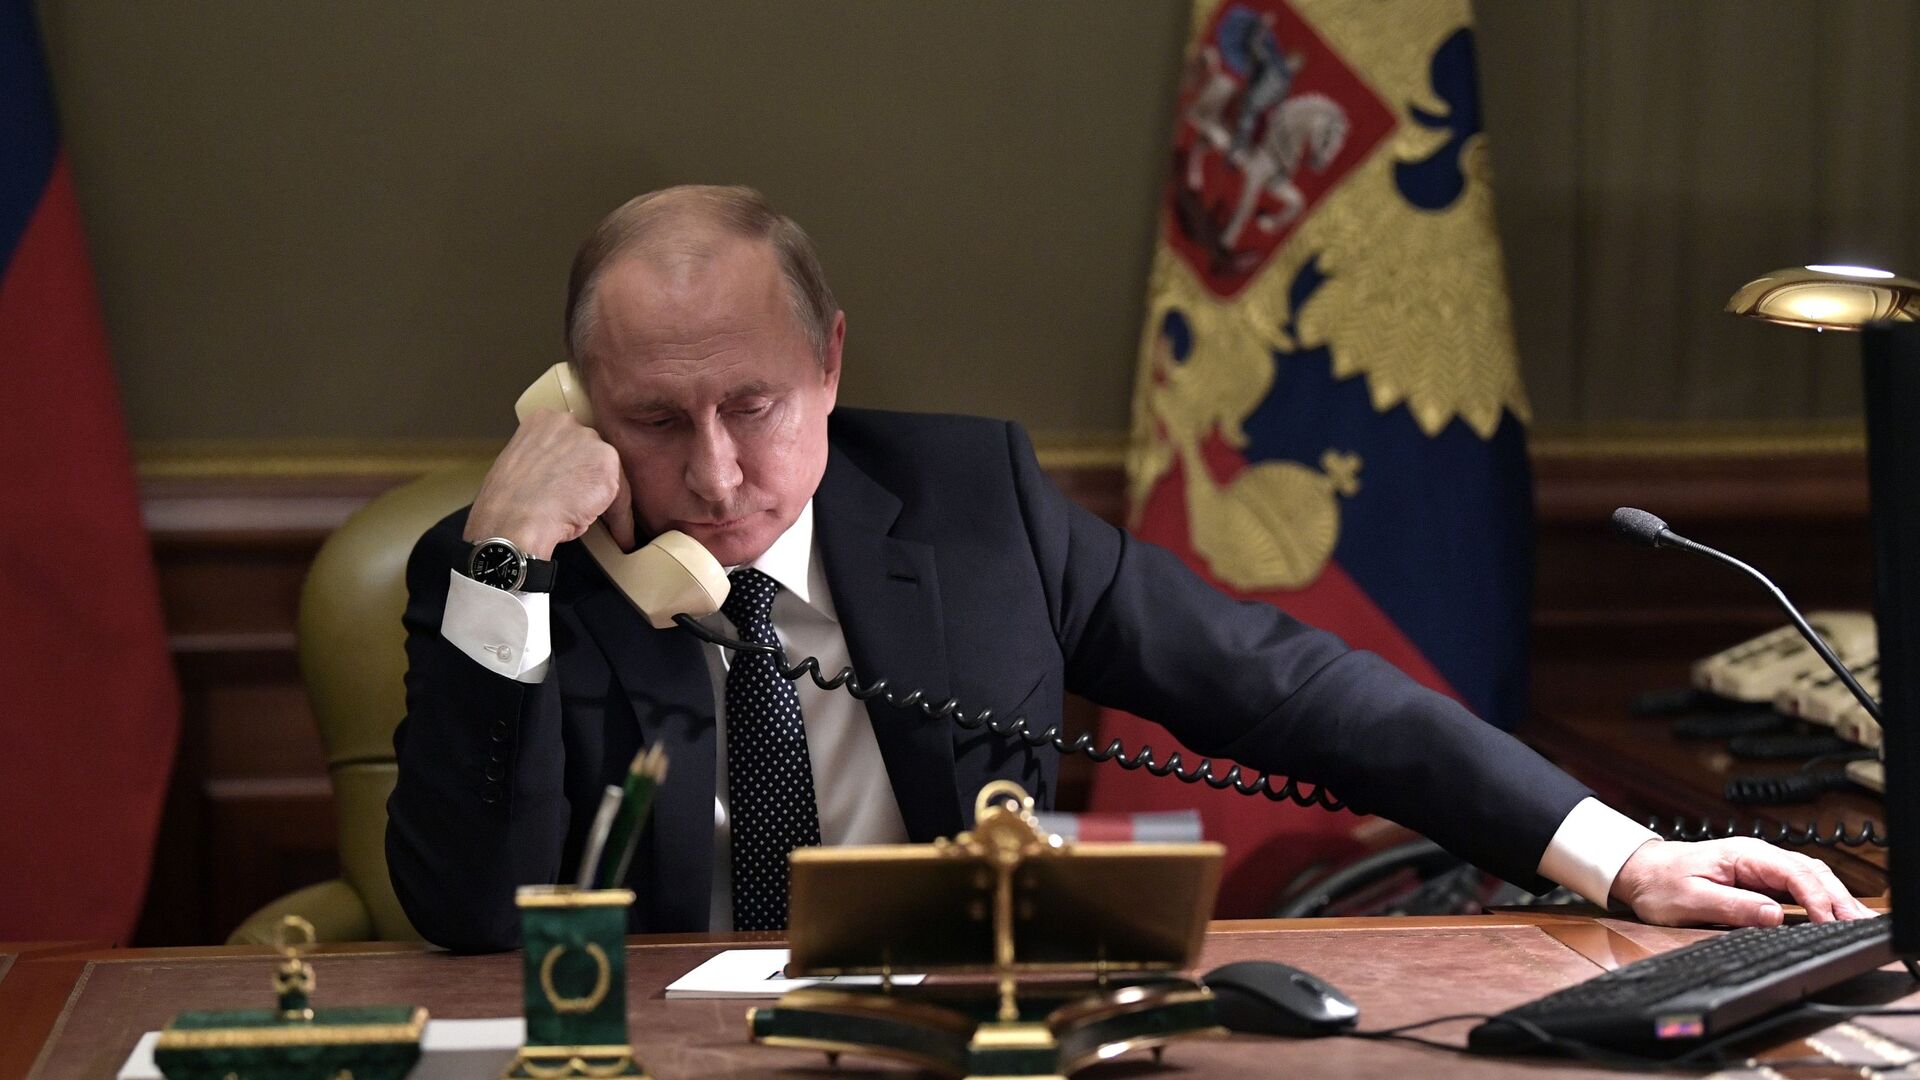 Putin razgovara telefonom - Sputnik Srbija, 1920, 13.04.2021